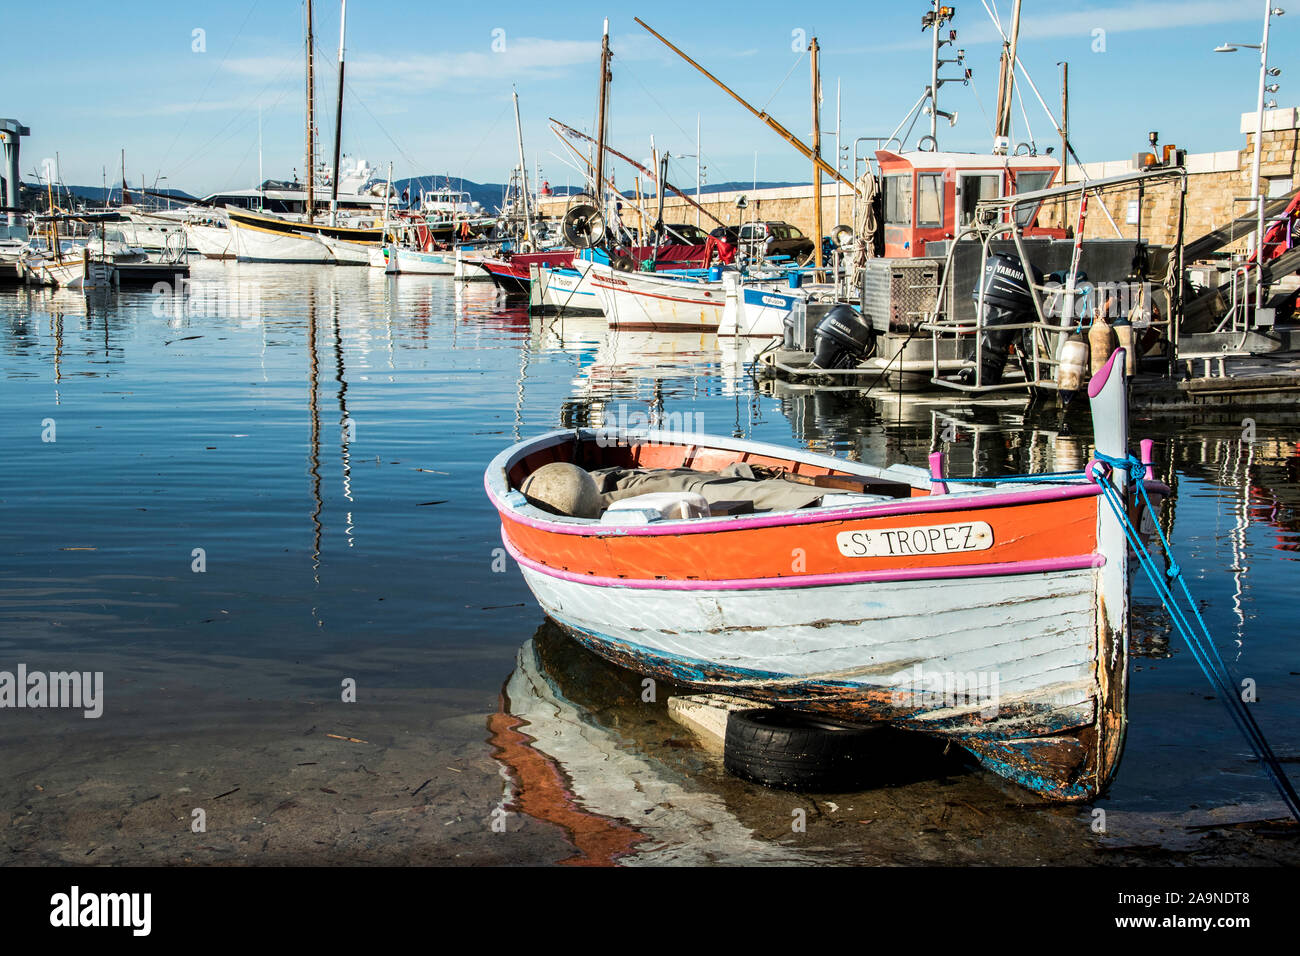 Port de Saint Tropez, France - Mole Jean Reveille - old boat - Cote d ...